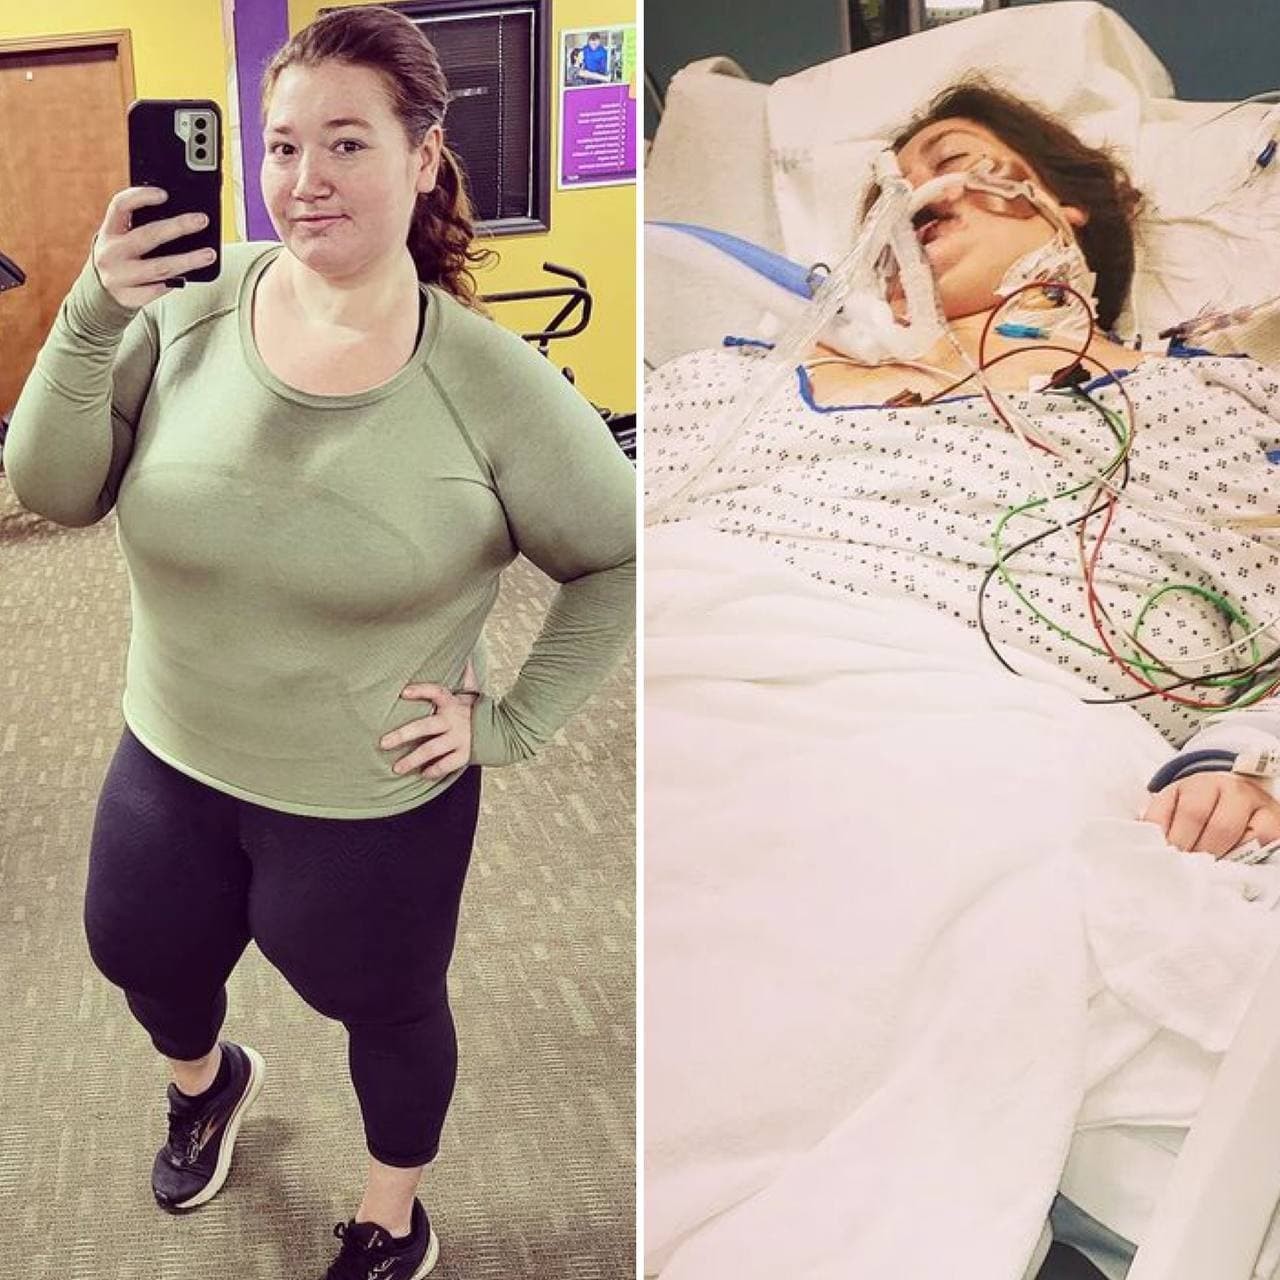 Influenciadora é hospitalizada depois que seus 'órgãos começaram a falhar' (Foto: Reprodução / Instagram)